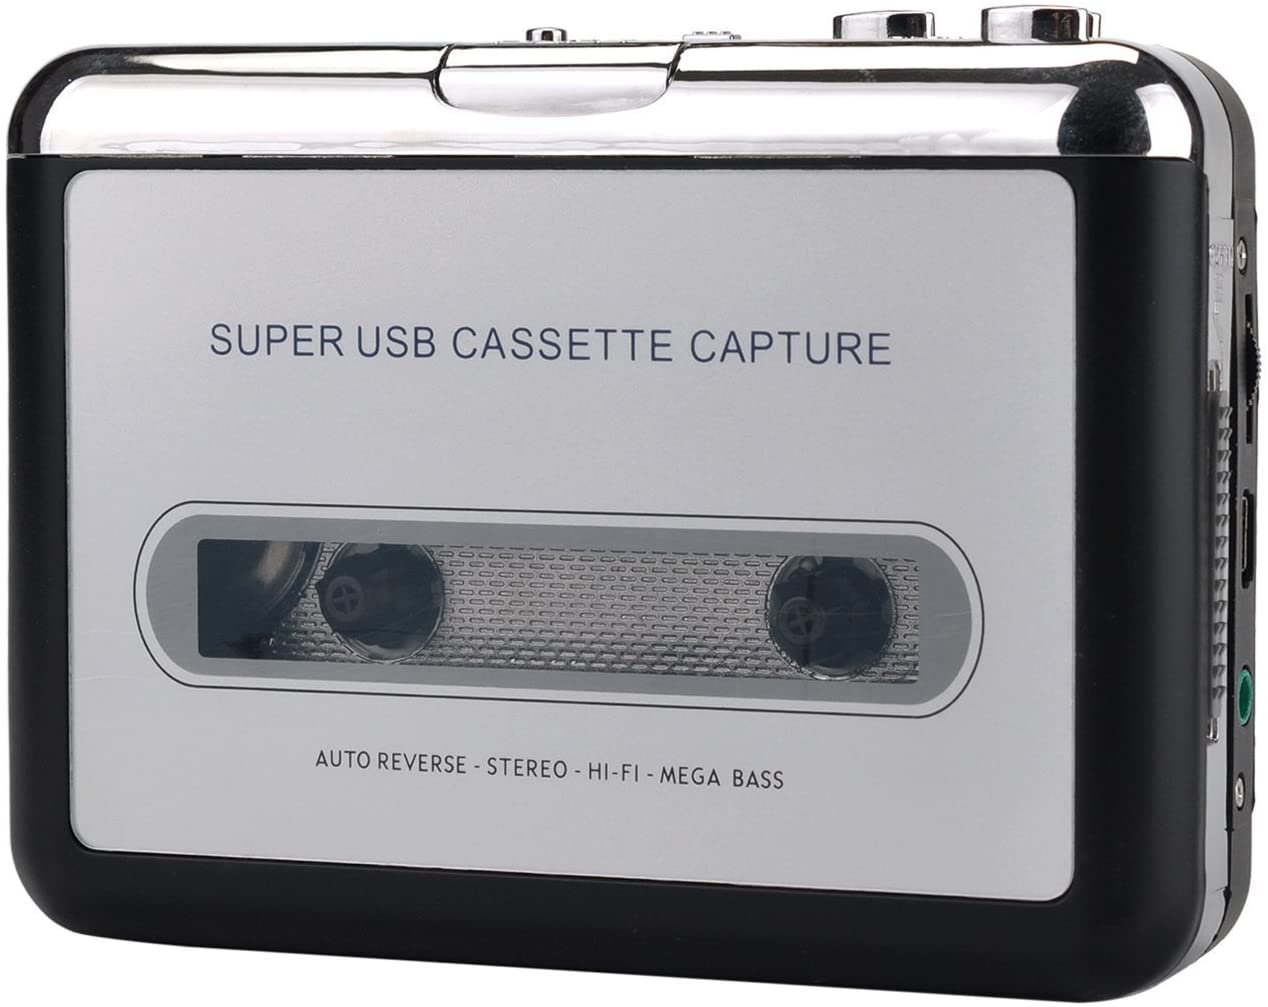 Super usb cassette capture